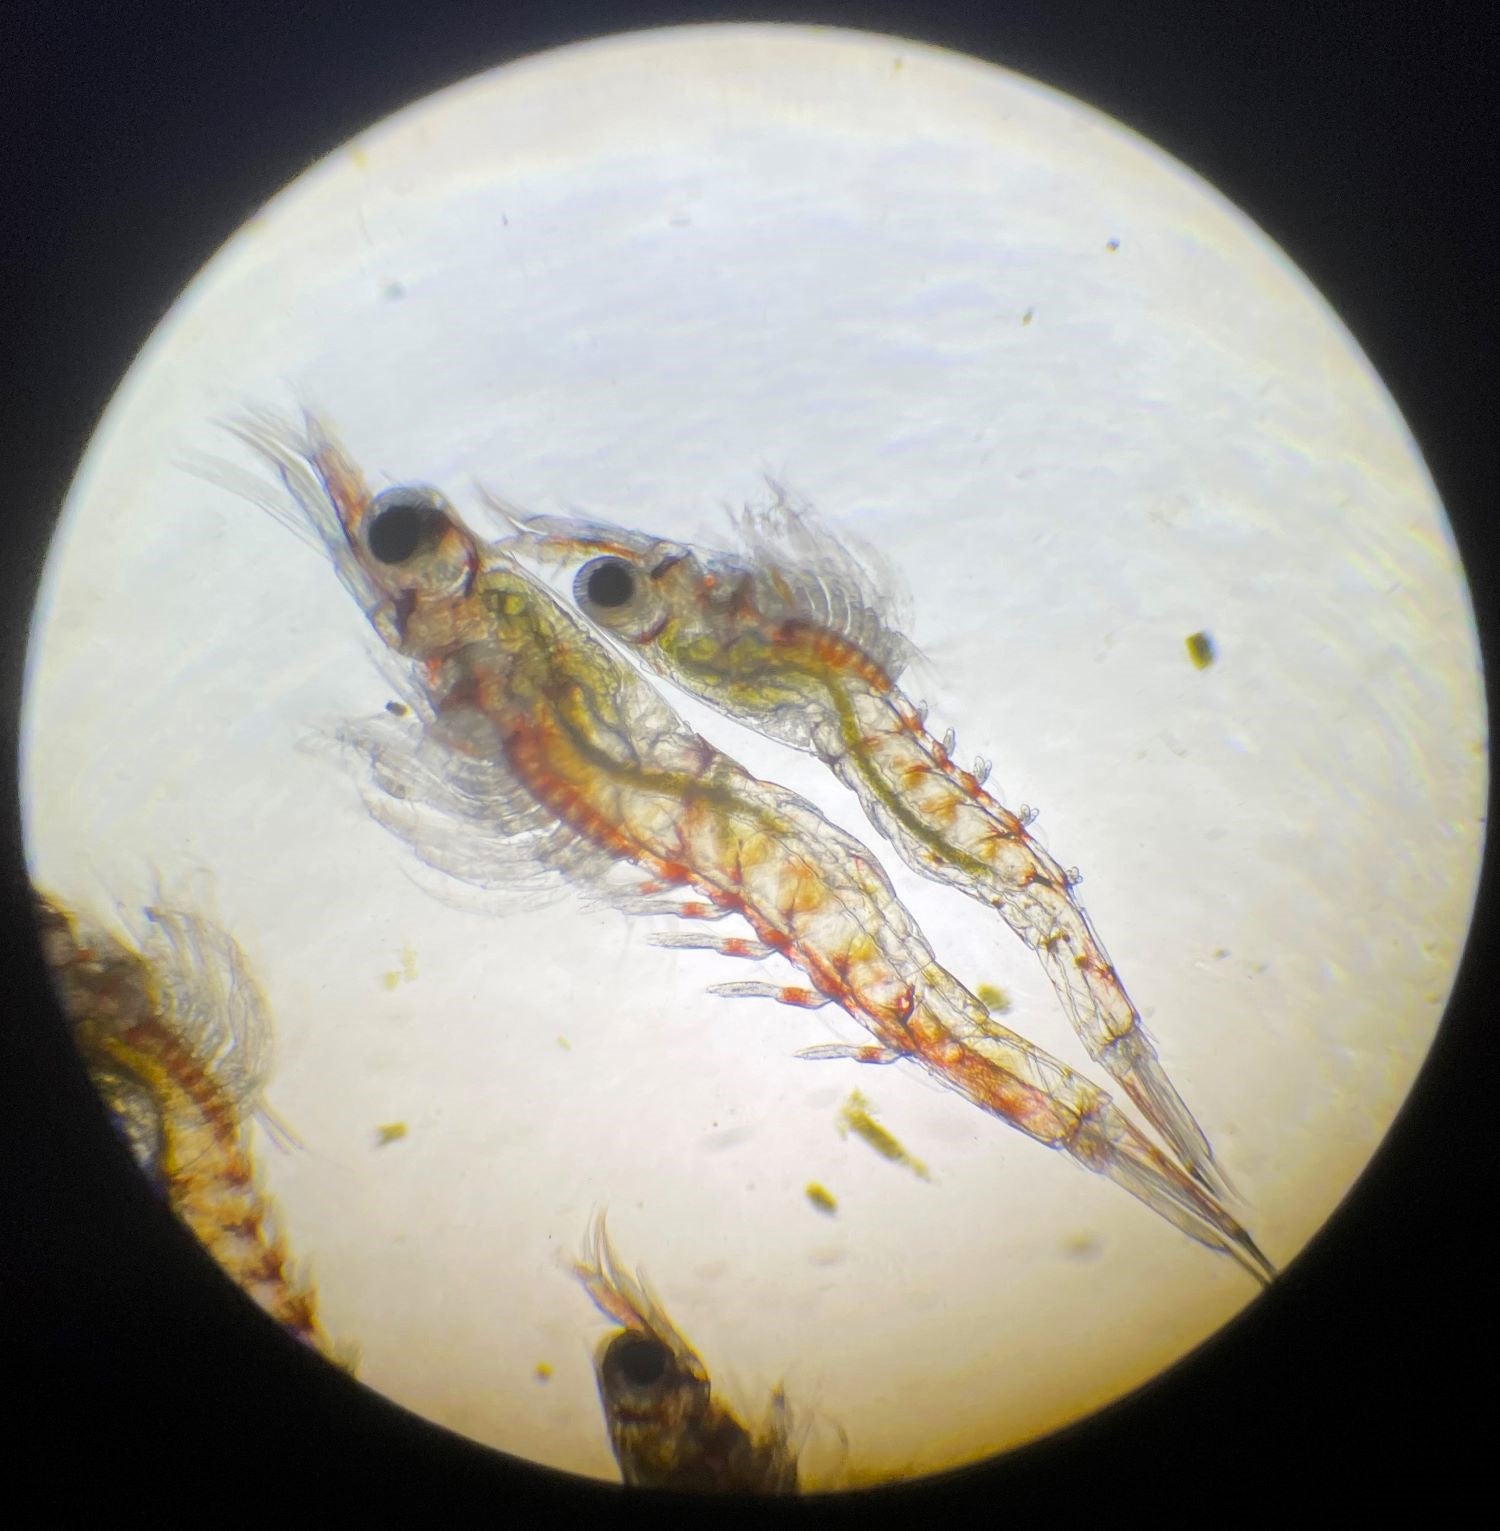 Larven der Amanogarnele (Caridina multidentata) unter dem Mikroskop. Oben Stufe 6 von 10 mit kurzen Schwimmbeinen, darunter Stufe 9 mit bereits gut ausgebildeten Schwimmbeinen